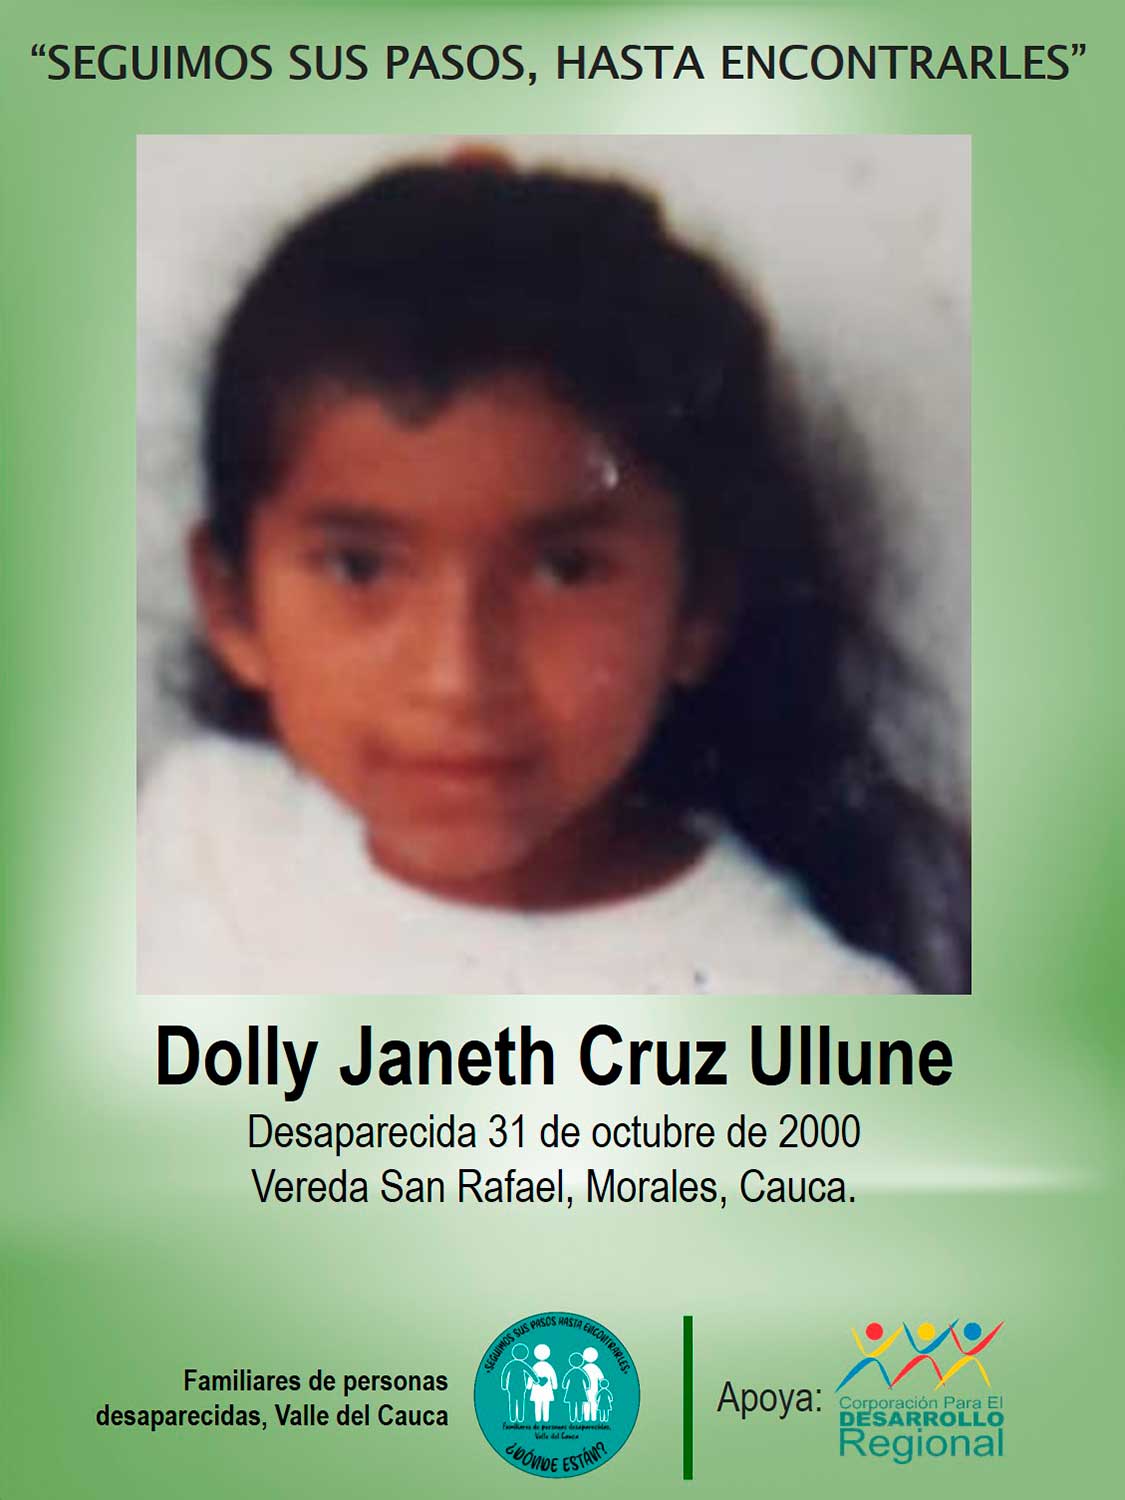 Dolly Janeth Cruz Ullune